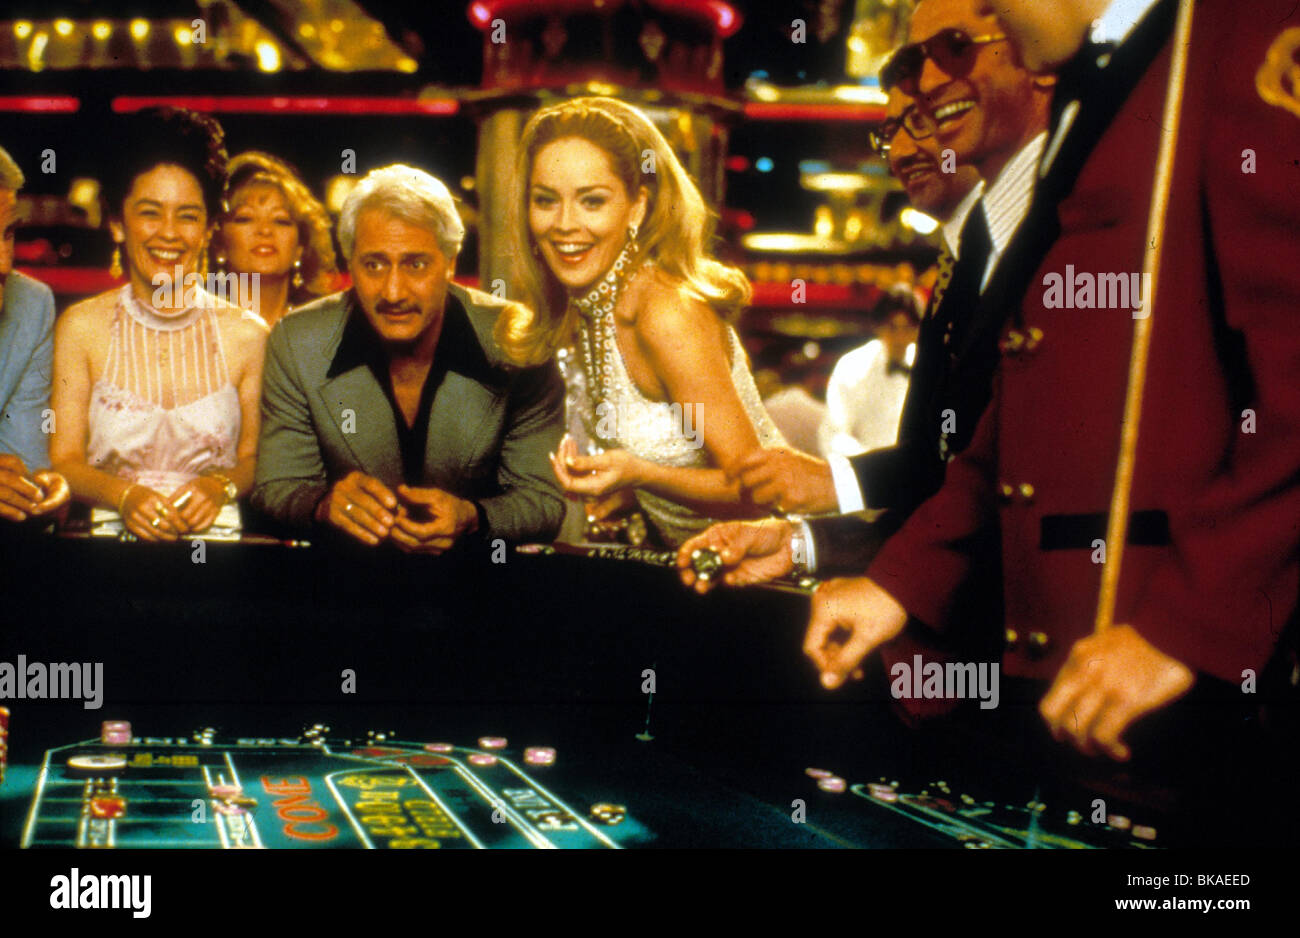 casino 1995 sharon stone